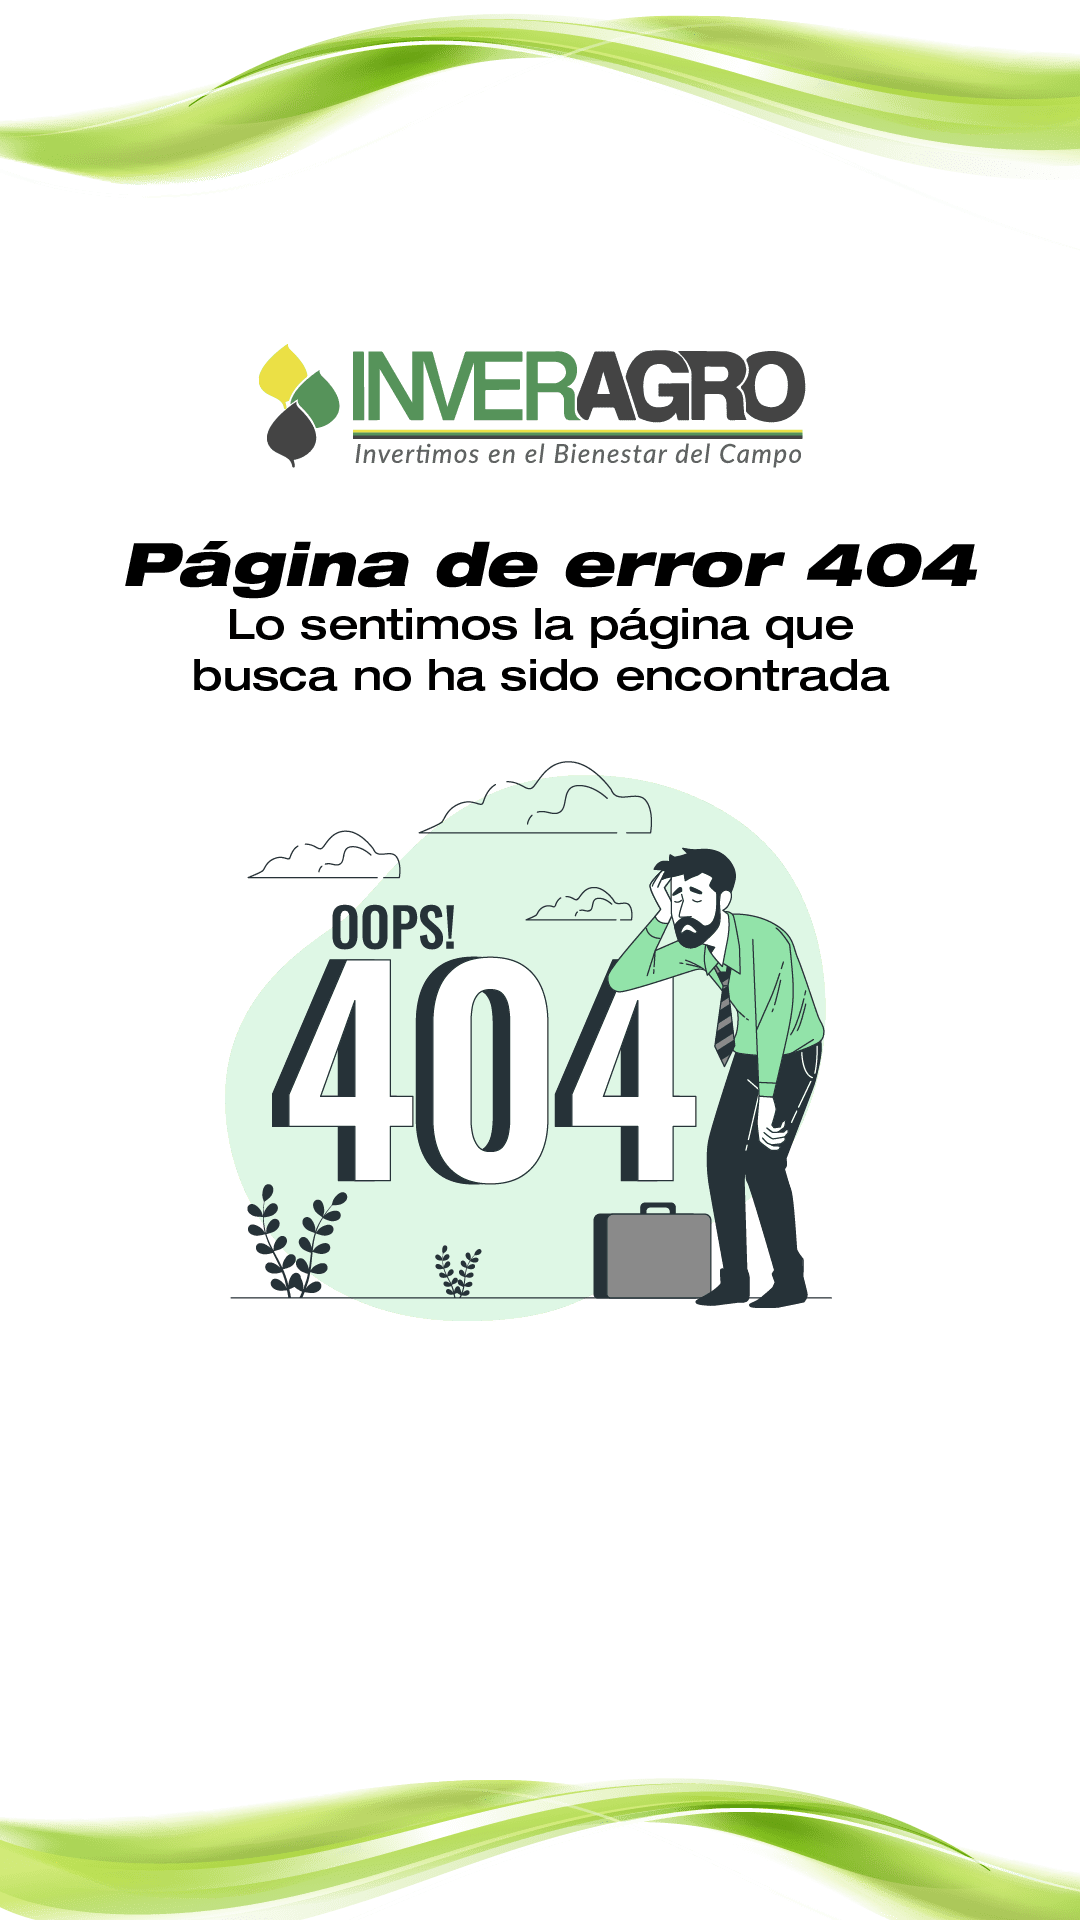 pagina de error 404 inveragro 01